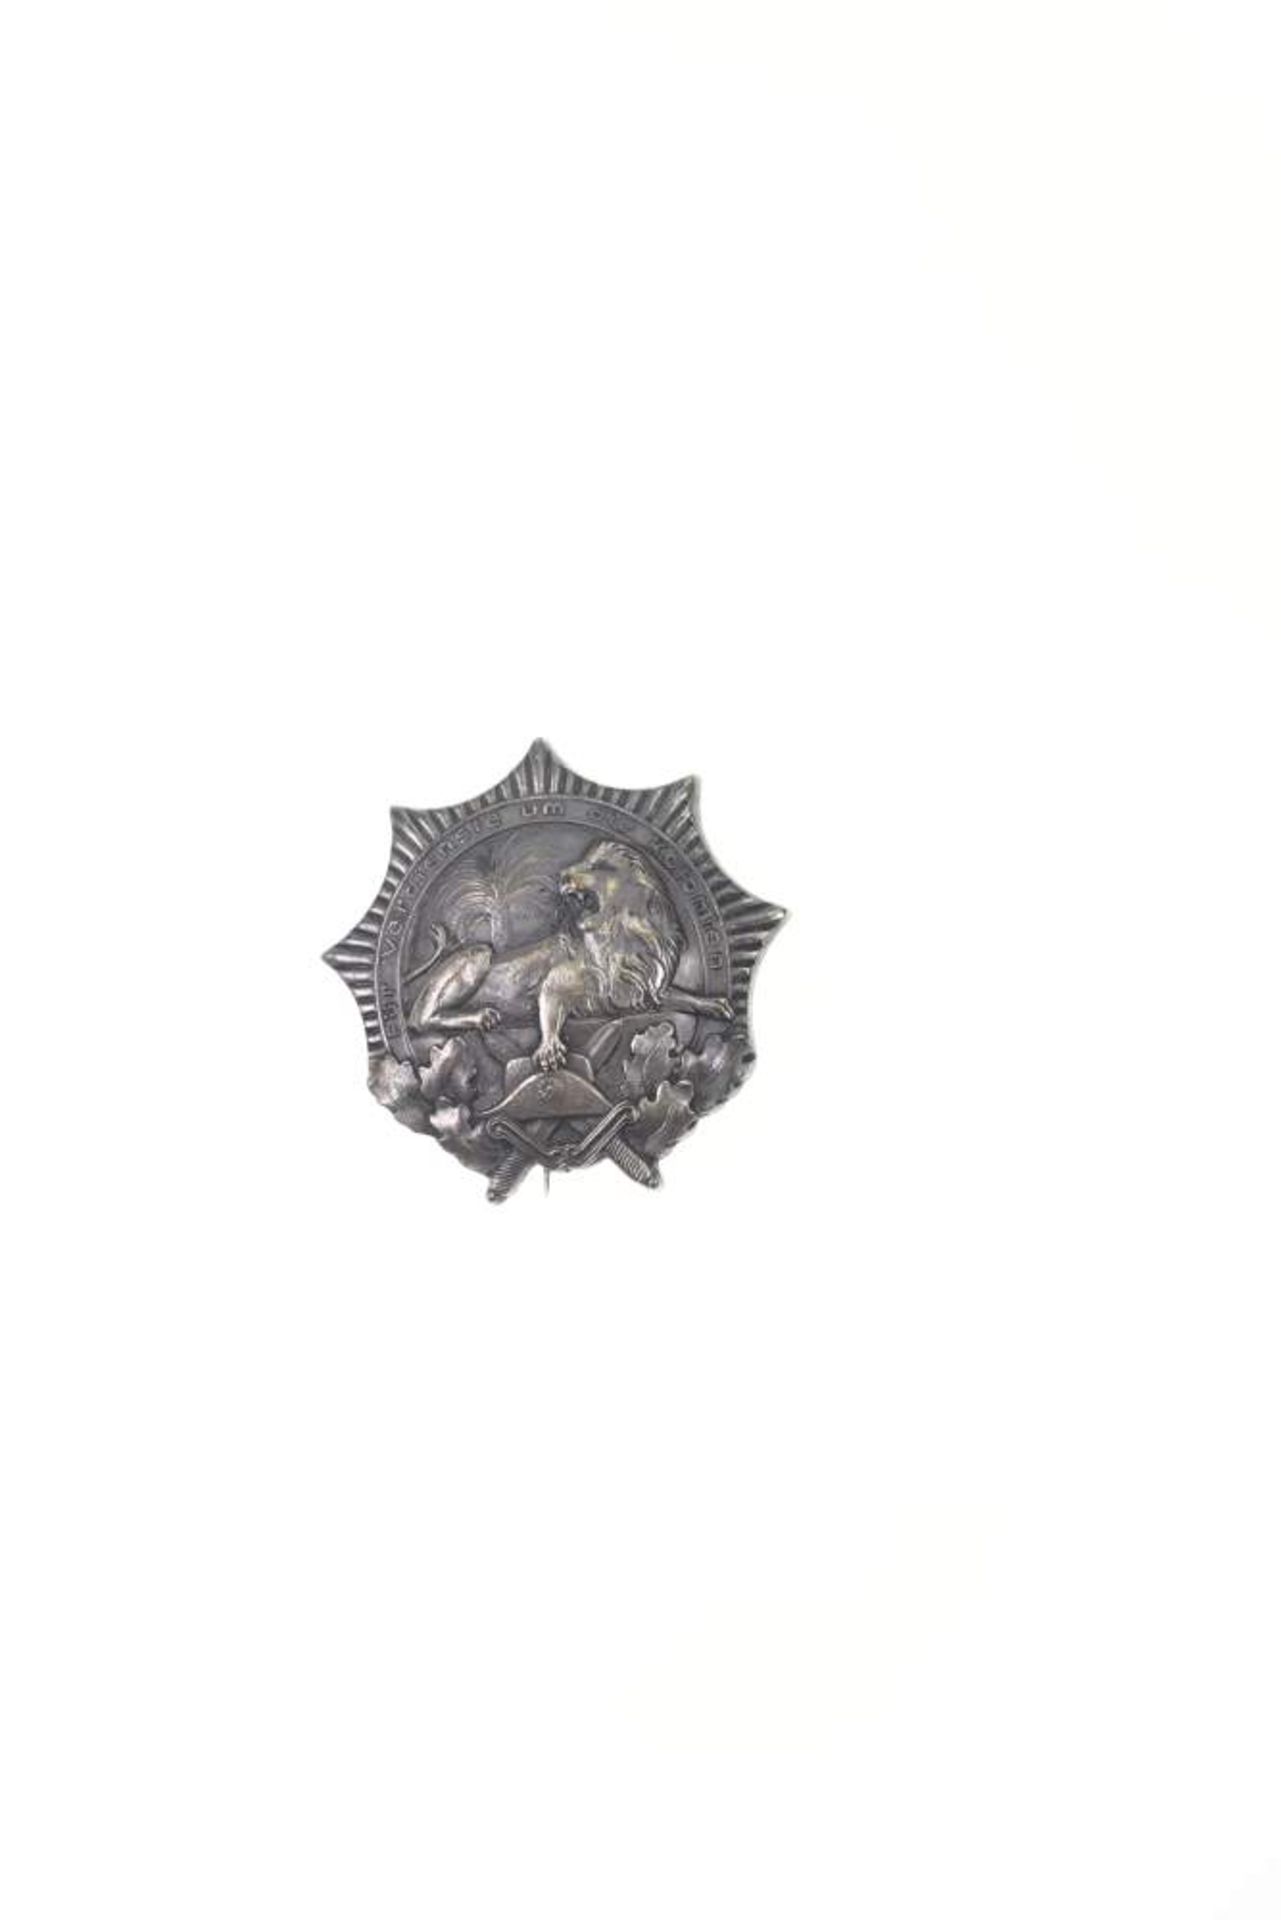 Deutscher Kolonialkriegerbund, Kolonialauszeichnung, Löwenorden in Silber, rückseitig mit "In